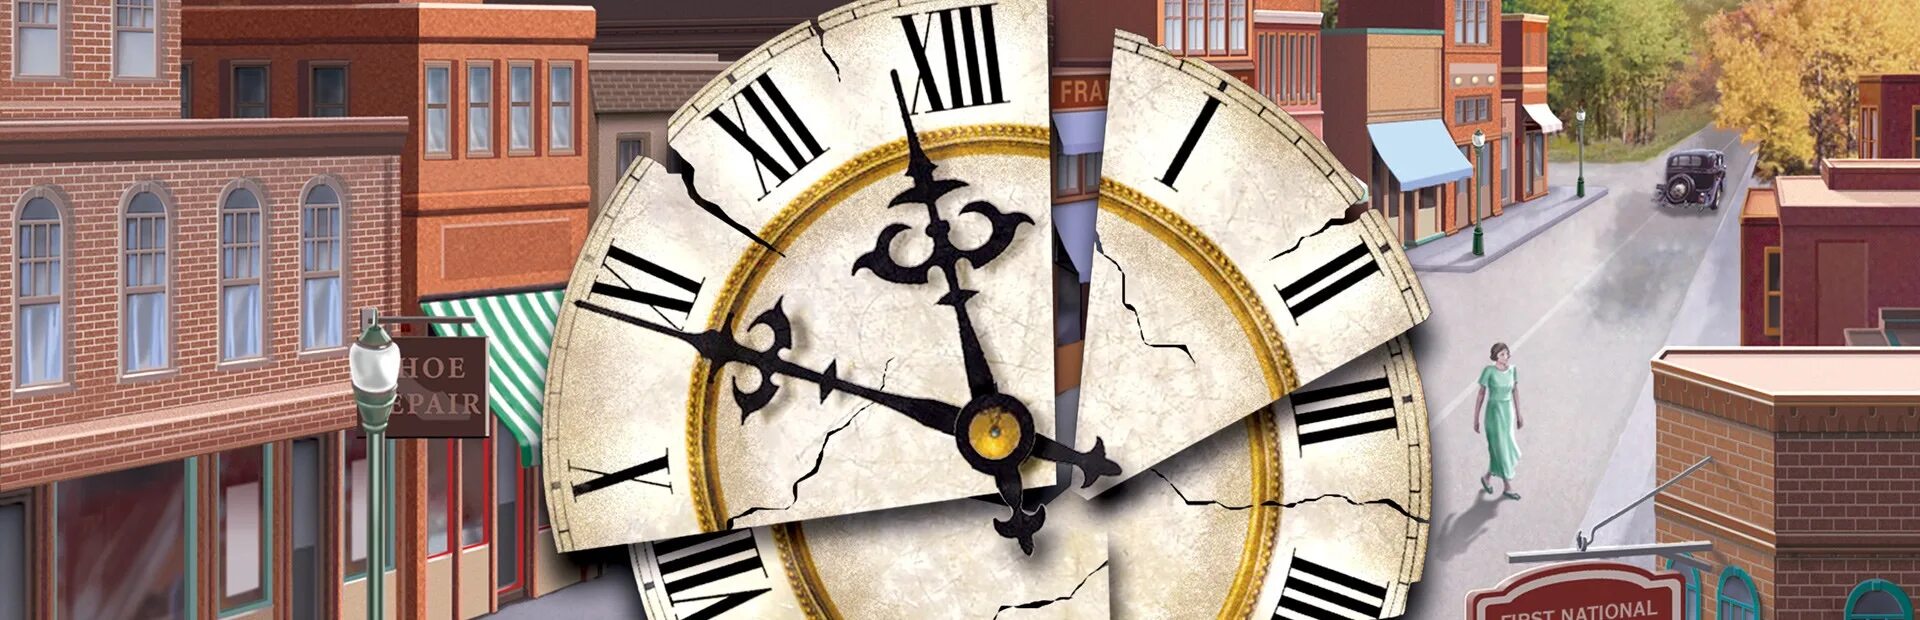 Nancy Drew Secret of the old Clock обложка. Тайна старинных часов.